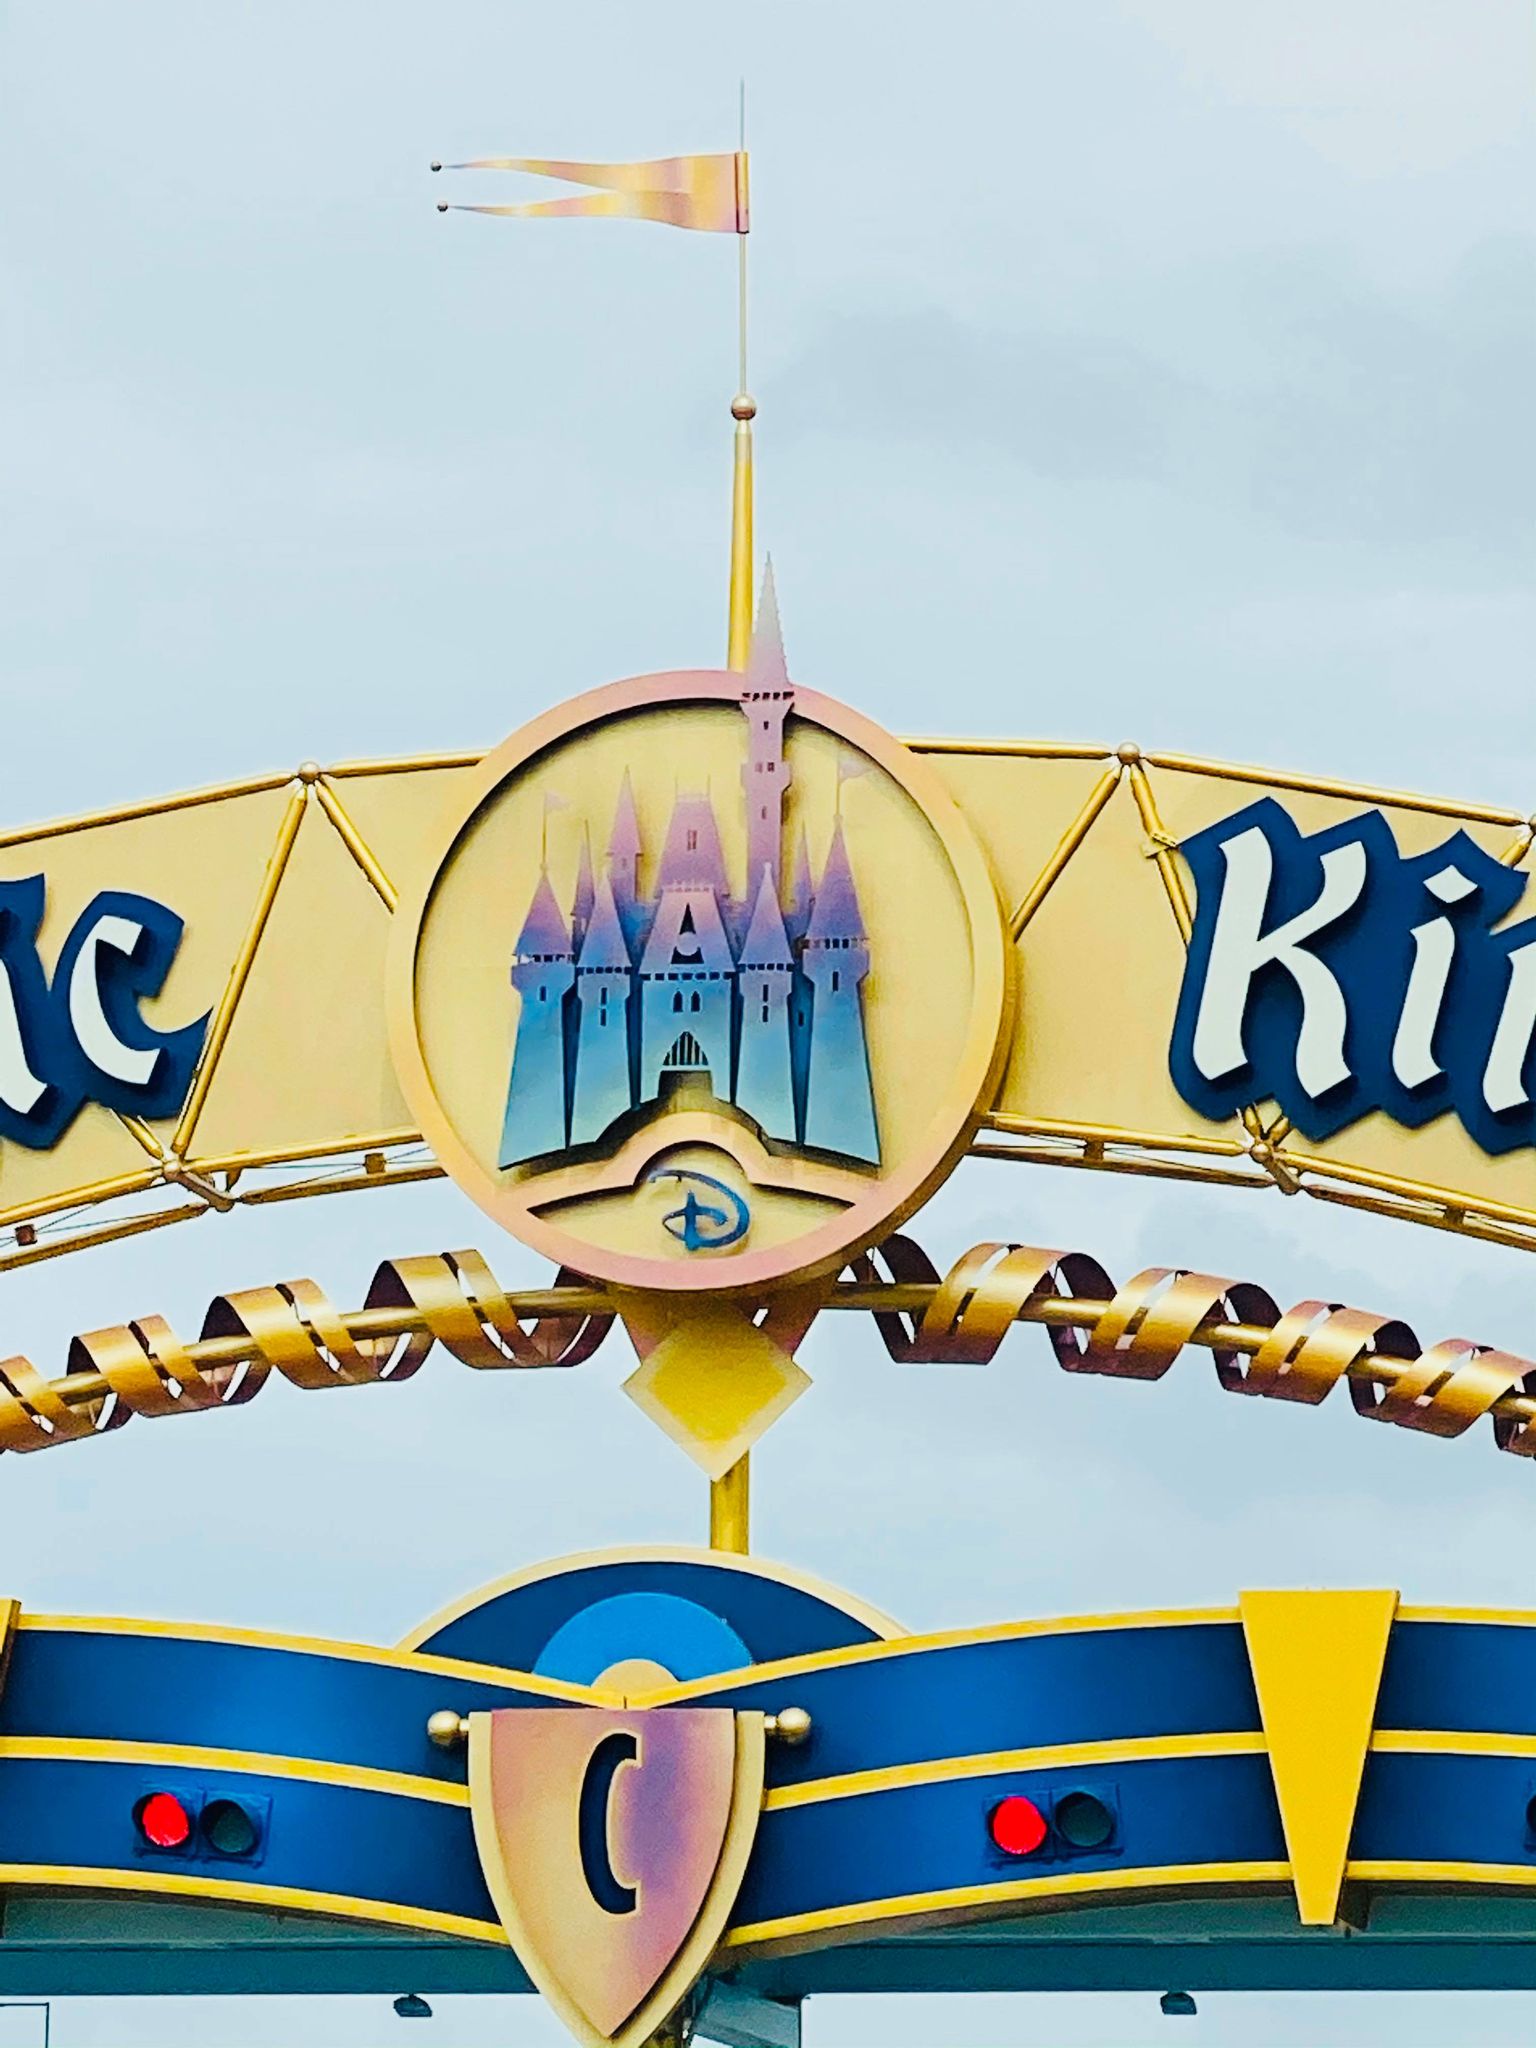 Magic Kingdom Auto Plaza Welcome Sign Transformation Complete